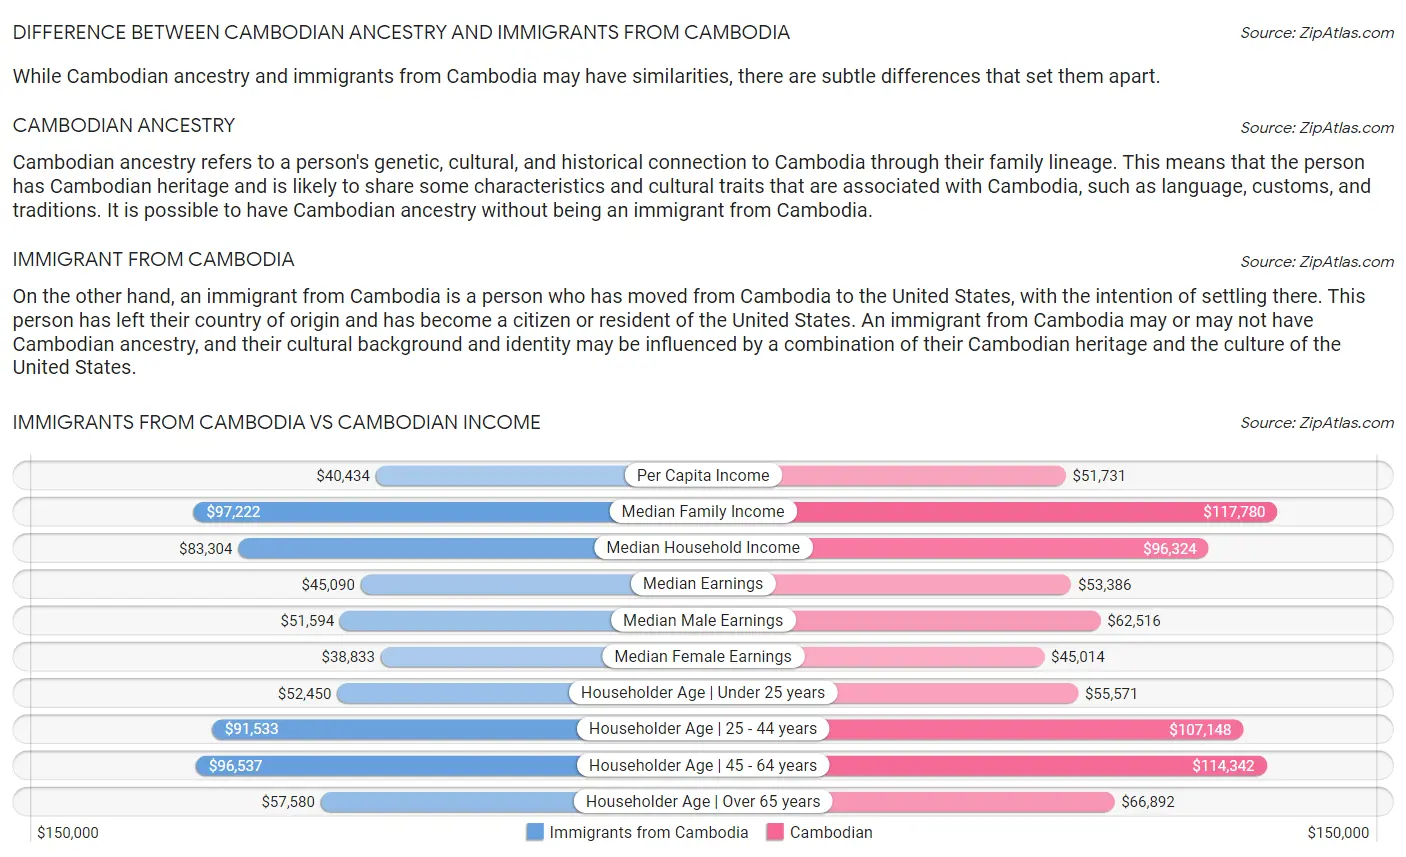 Immigrants from Cambodia vs Cambodian Income